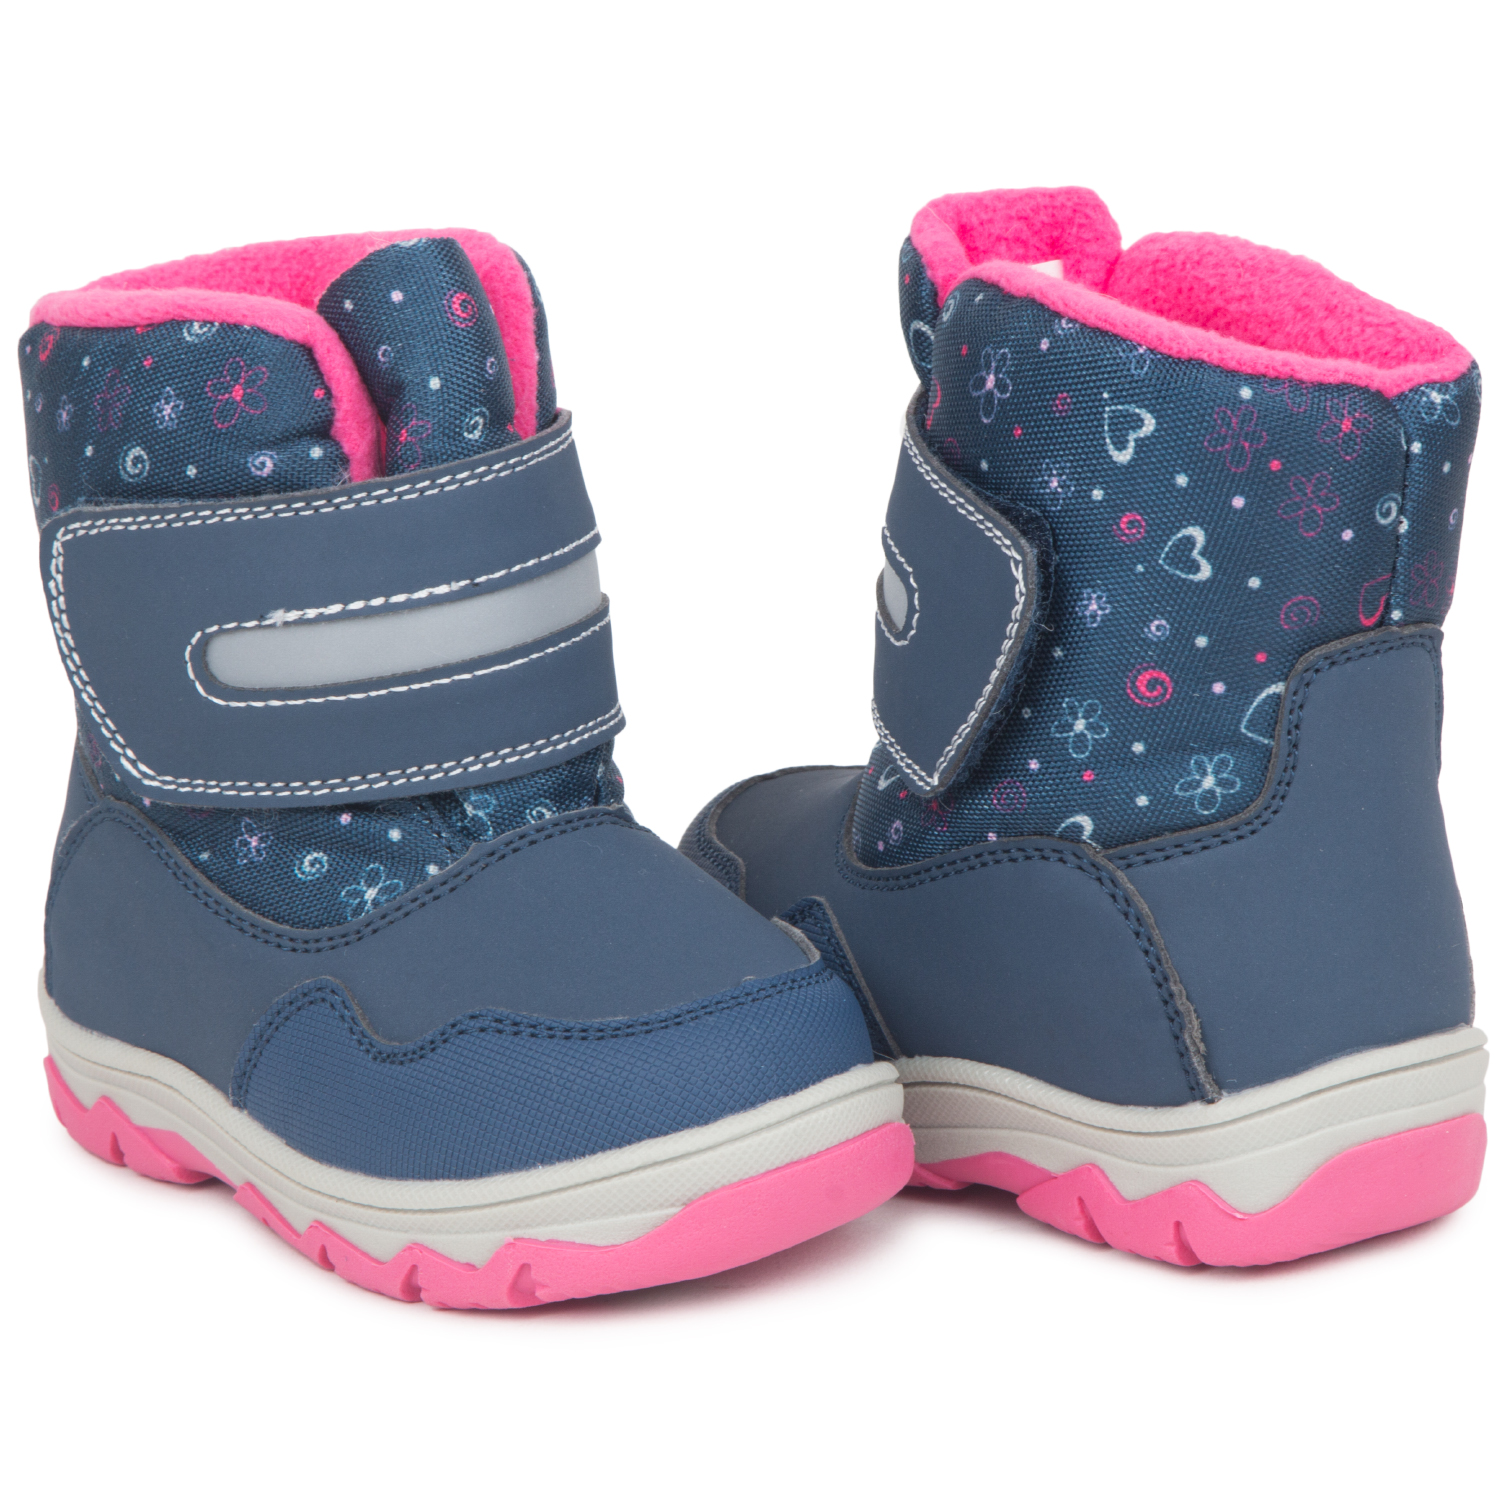 Купить Ботинки для детей KDX BSTF20-14 navy fuxia синий 24,